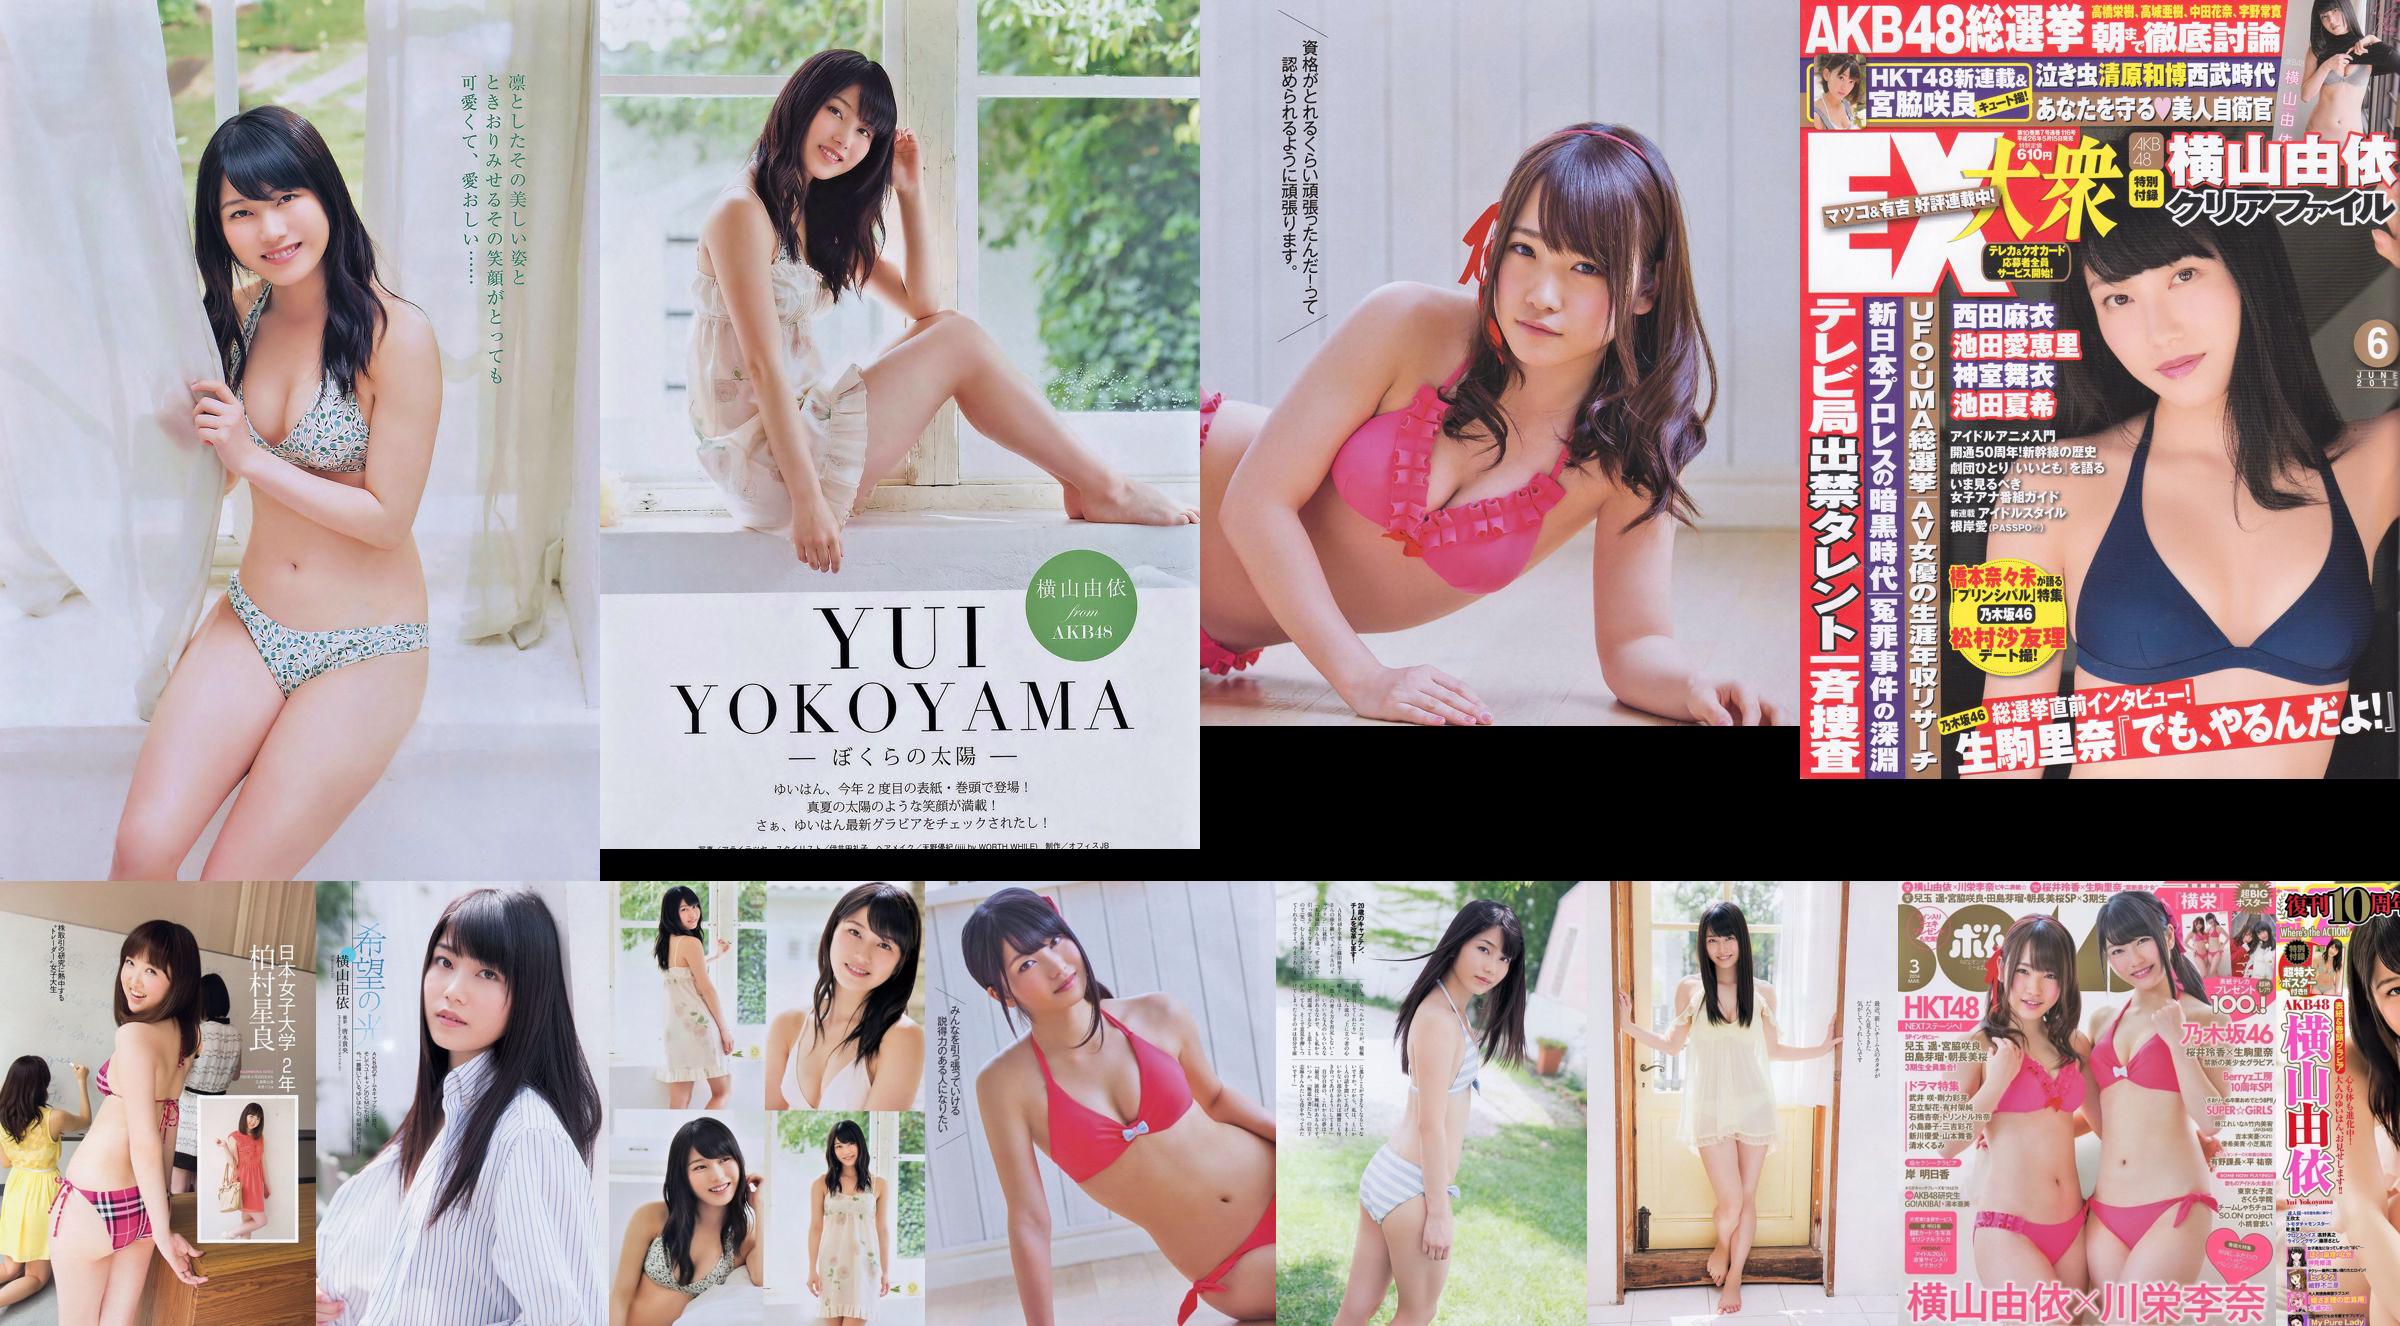 Momoiro Clover Z Yui Yokoyama Yua Shinkawa Mio Uema Anri Sugihara Kumi Yagami [Wekelijkse Playboy] 2013 No.20 Foto Moshi No.bd8d2a Pagina 11